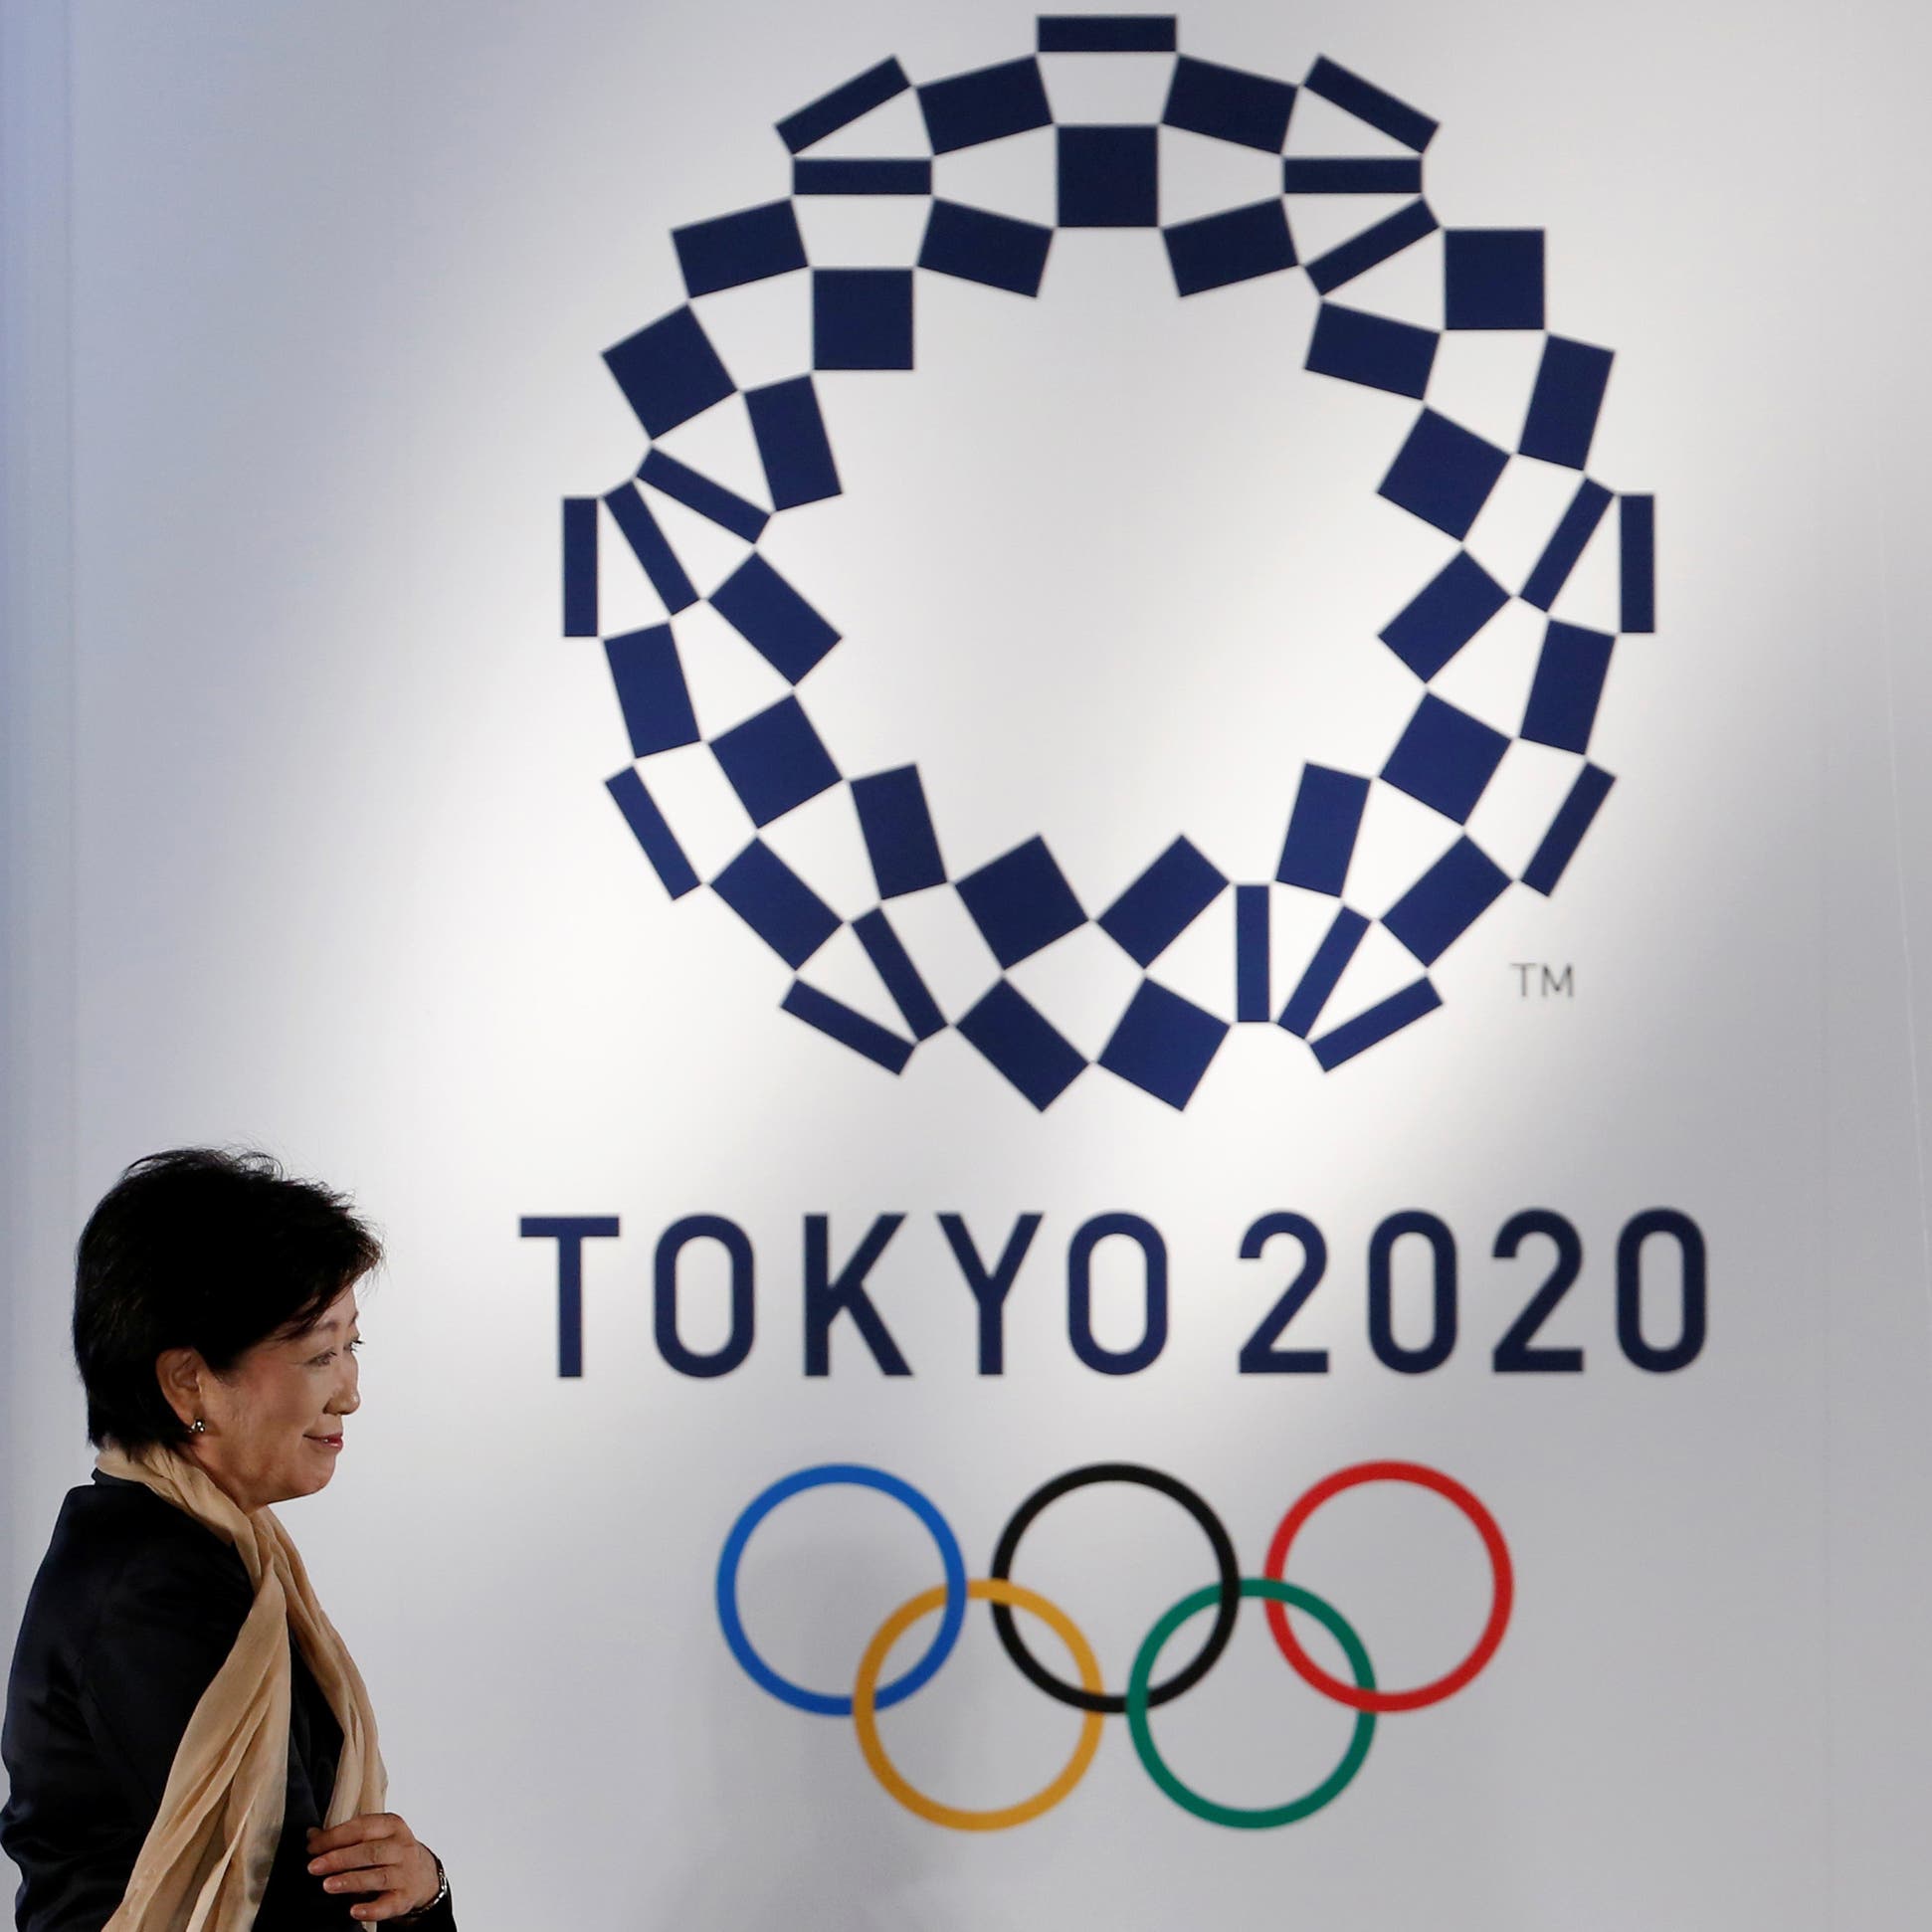 رويترز: اليابان تستعد "بهدوء" لإمكانية تأجيل الأولمبياد